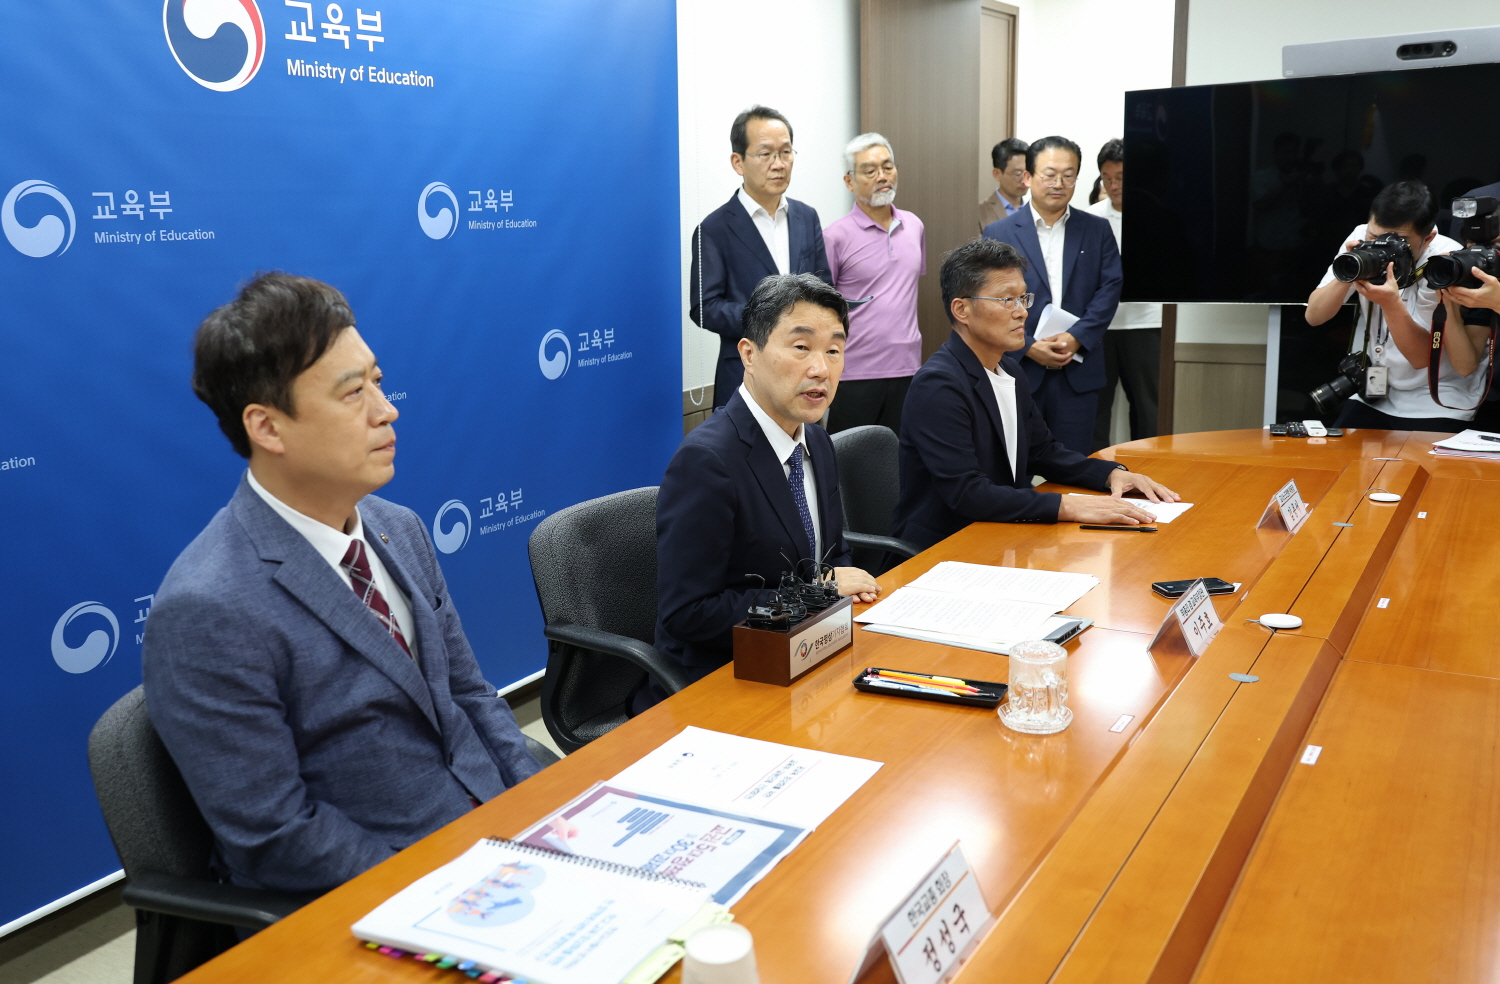 이주호 부총리 겸 교육부장관은 9월 5일(화), 정부서울청사에서 한국교원단체총연합회, 교사노동조합연맹과 함께 간담회를 개최했다.